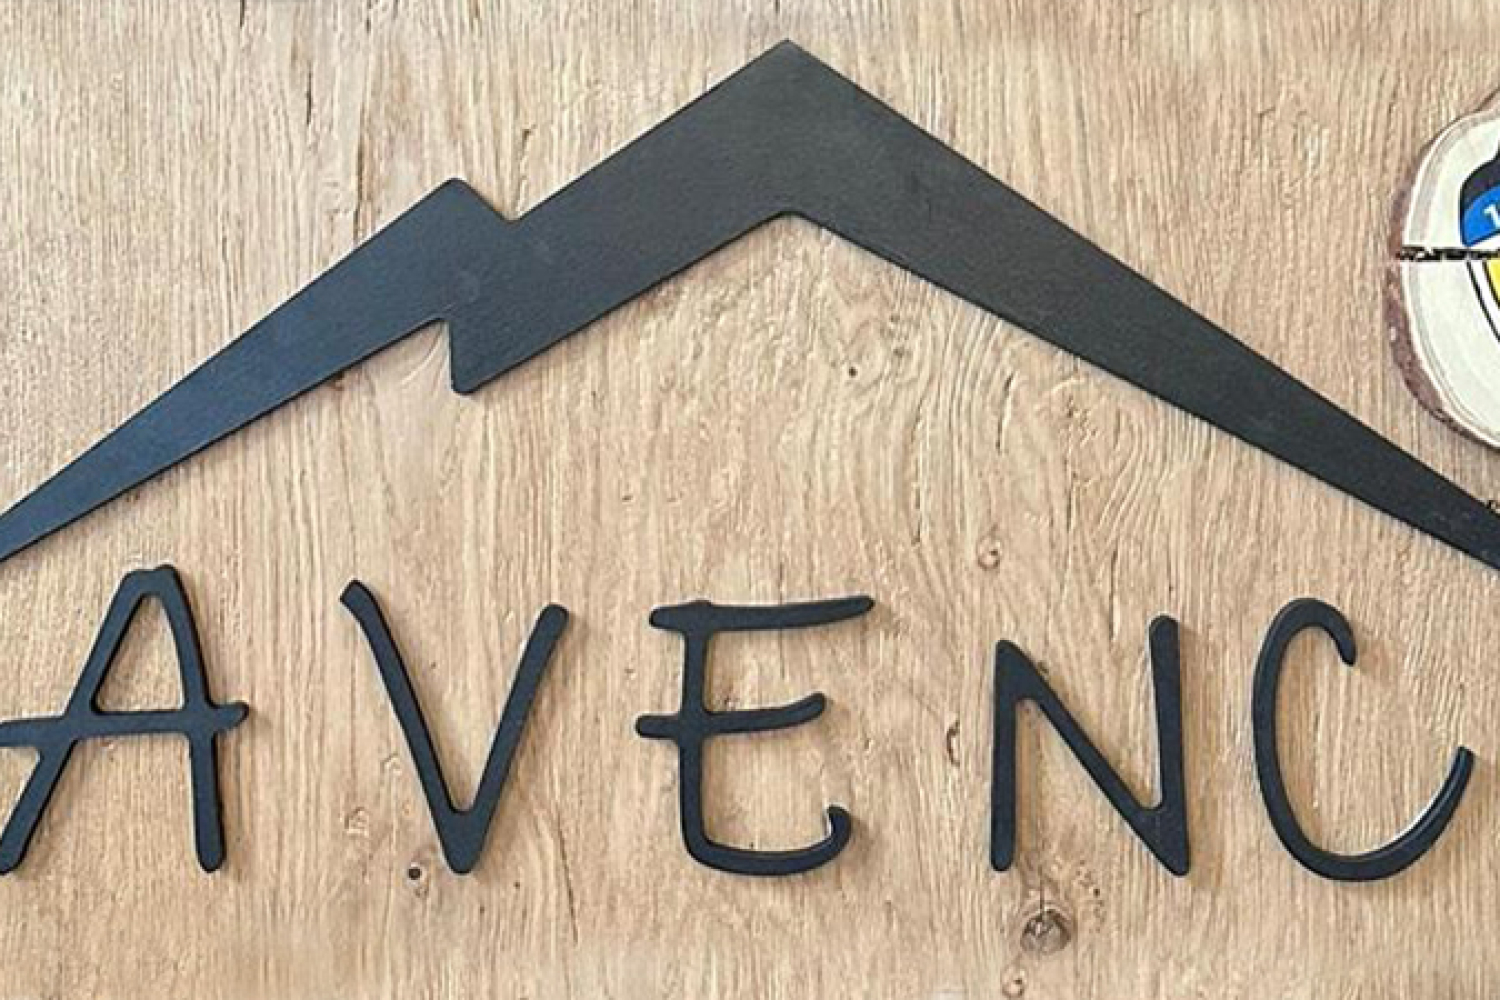 L'Avenc, el bar-restaurant del CETerrassa obre les portes